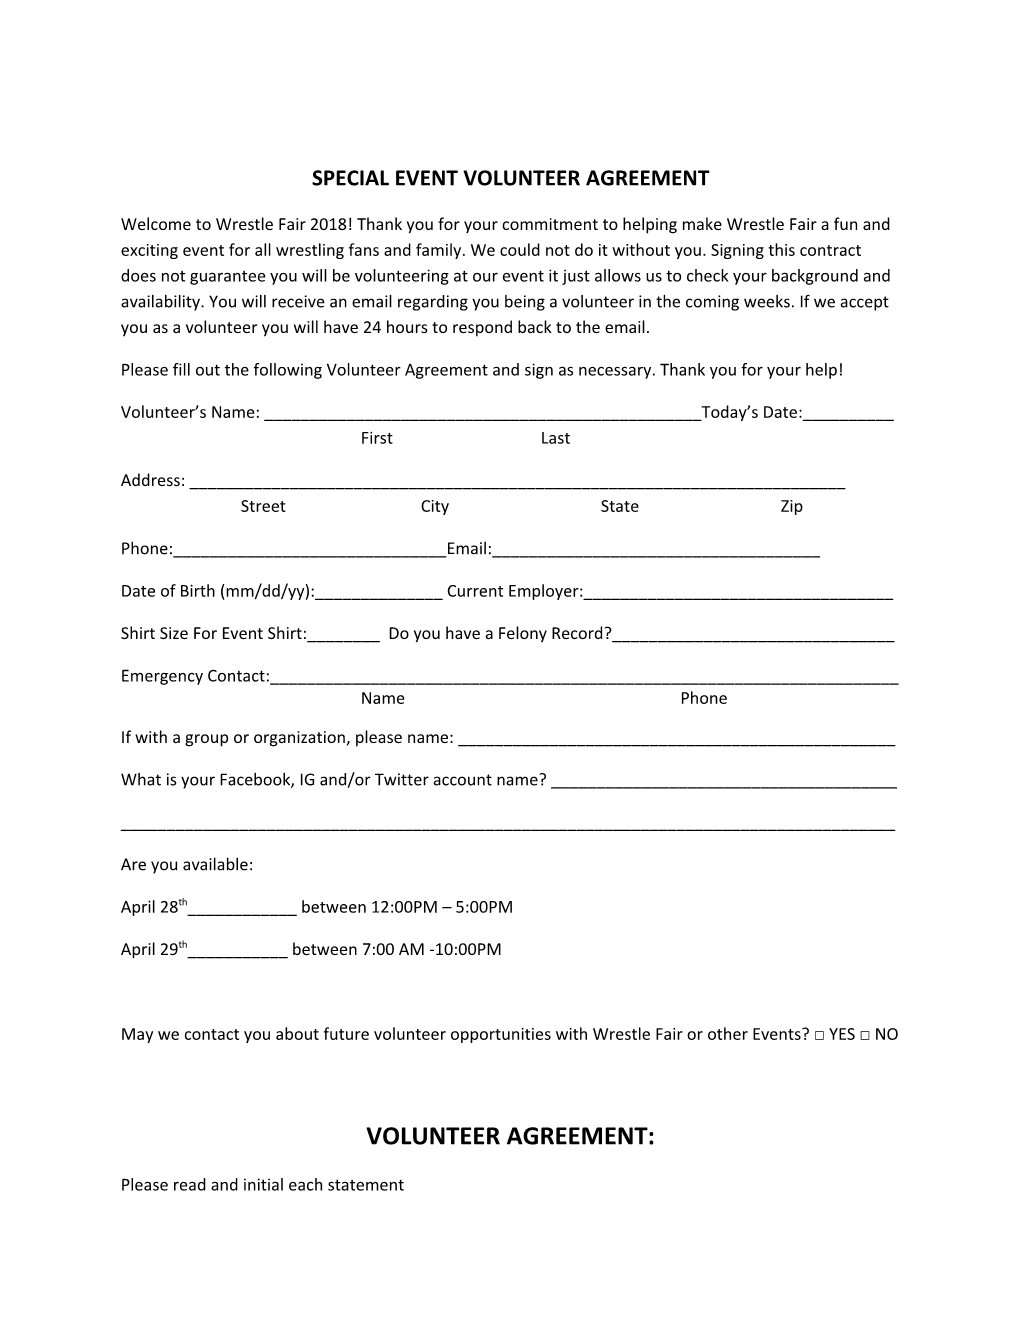 Special Event Volunteer Agreement